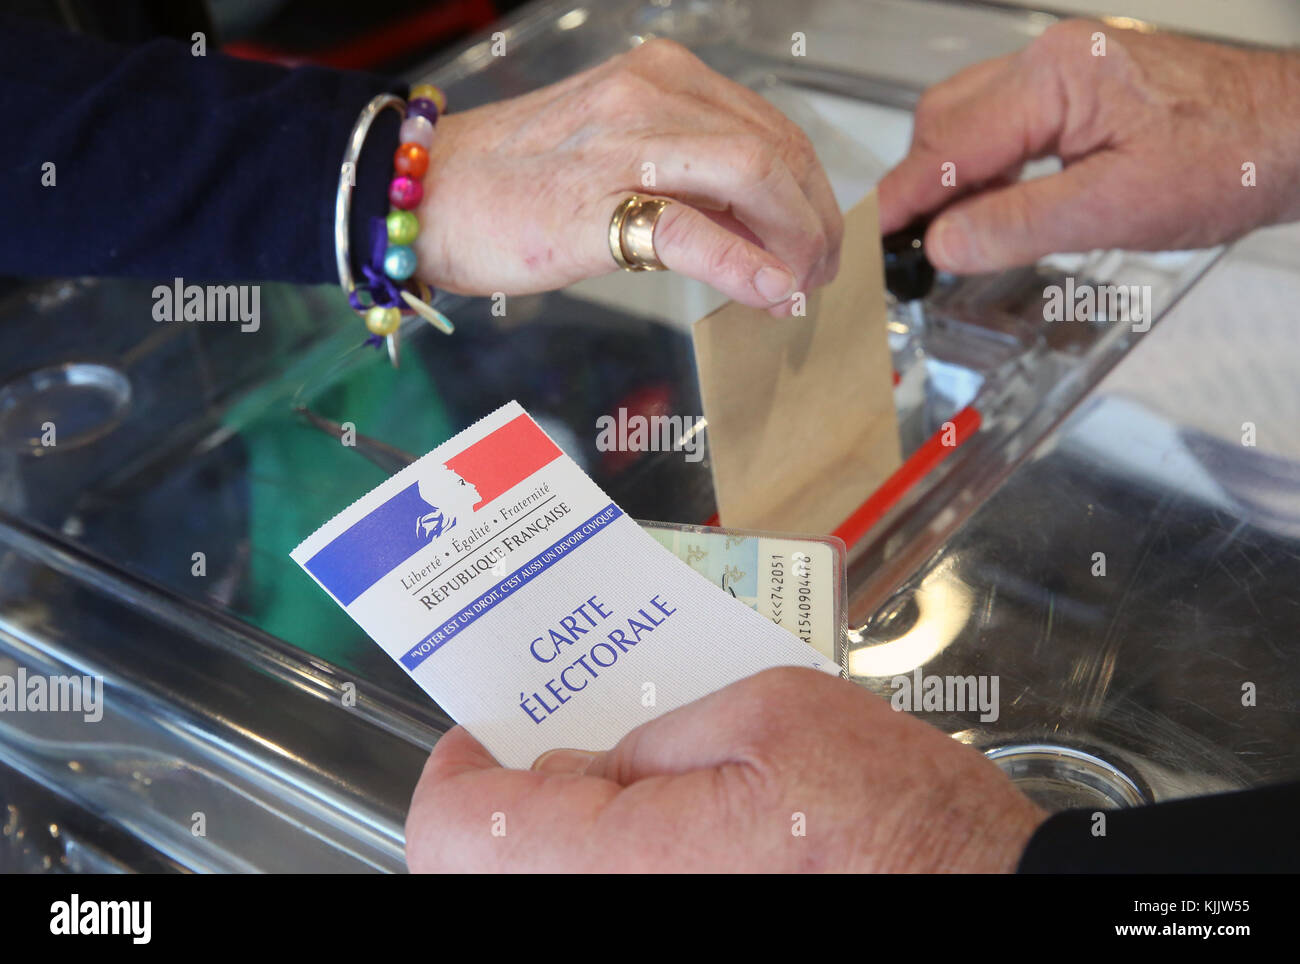 Wahlkabine in Frankreich. Hand fallenlassen Stimmzettel. Frankreich. Stockfoto